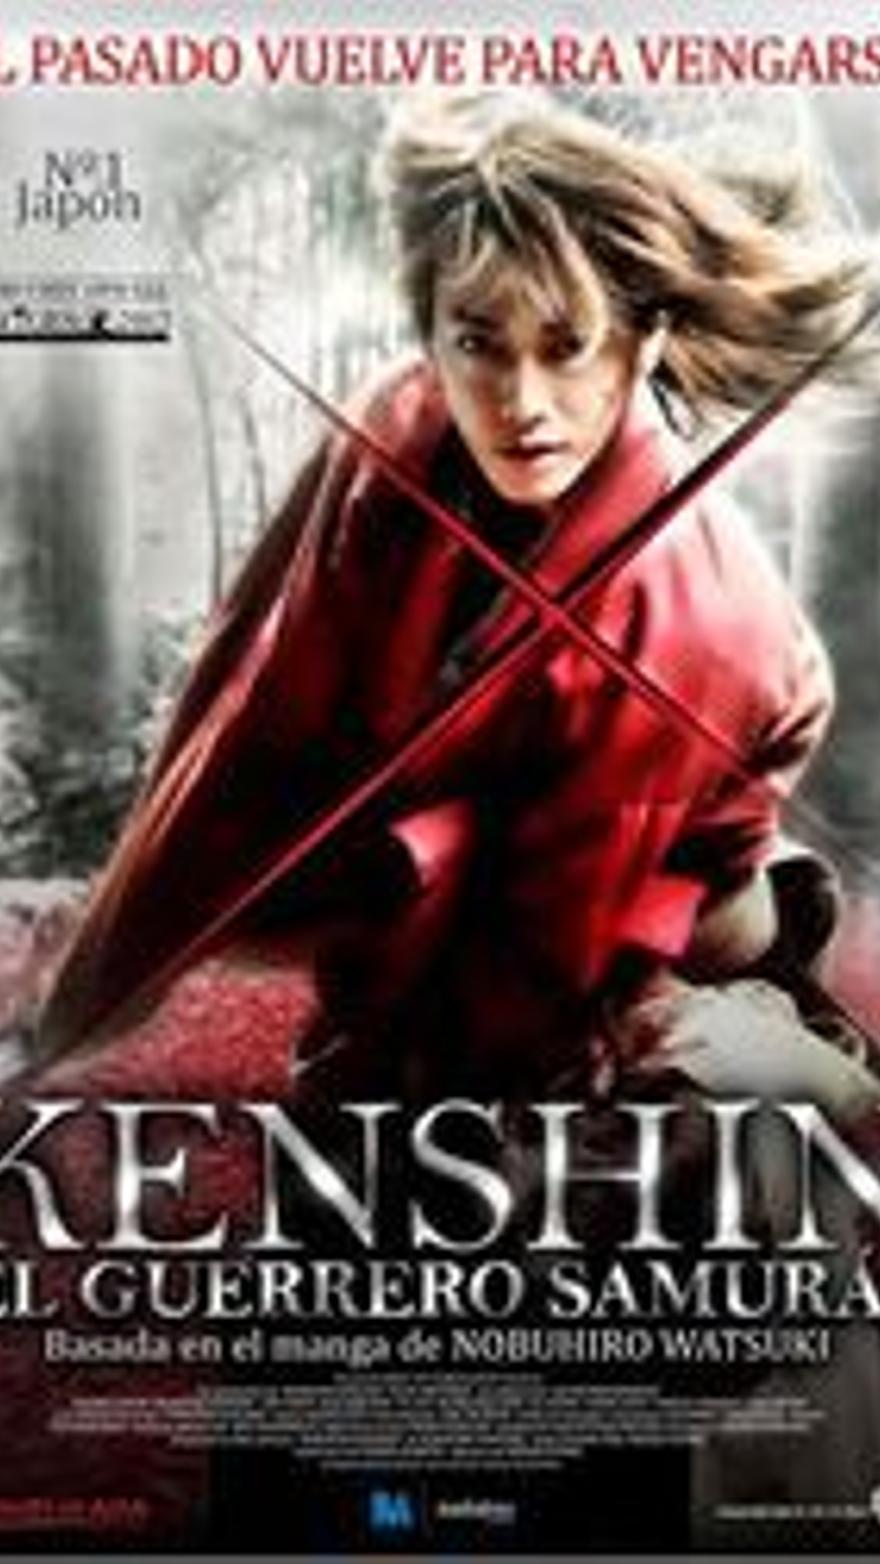 Kenshin el guerrero samurái